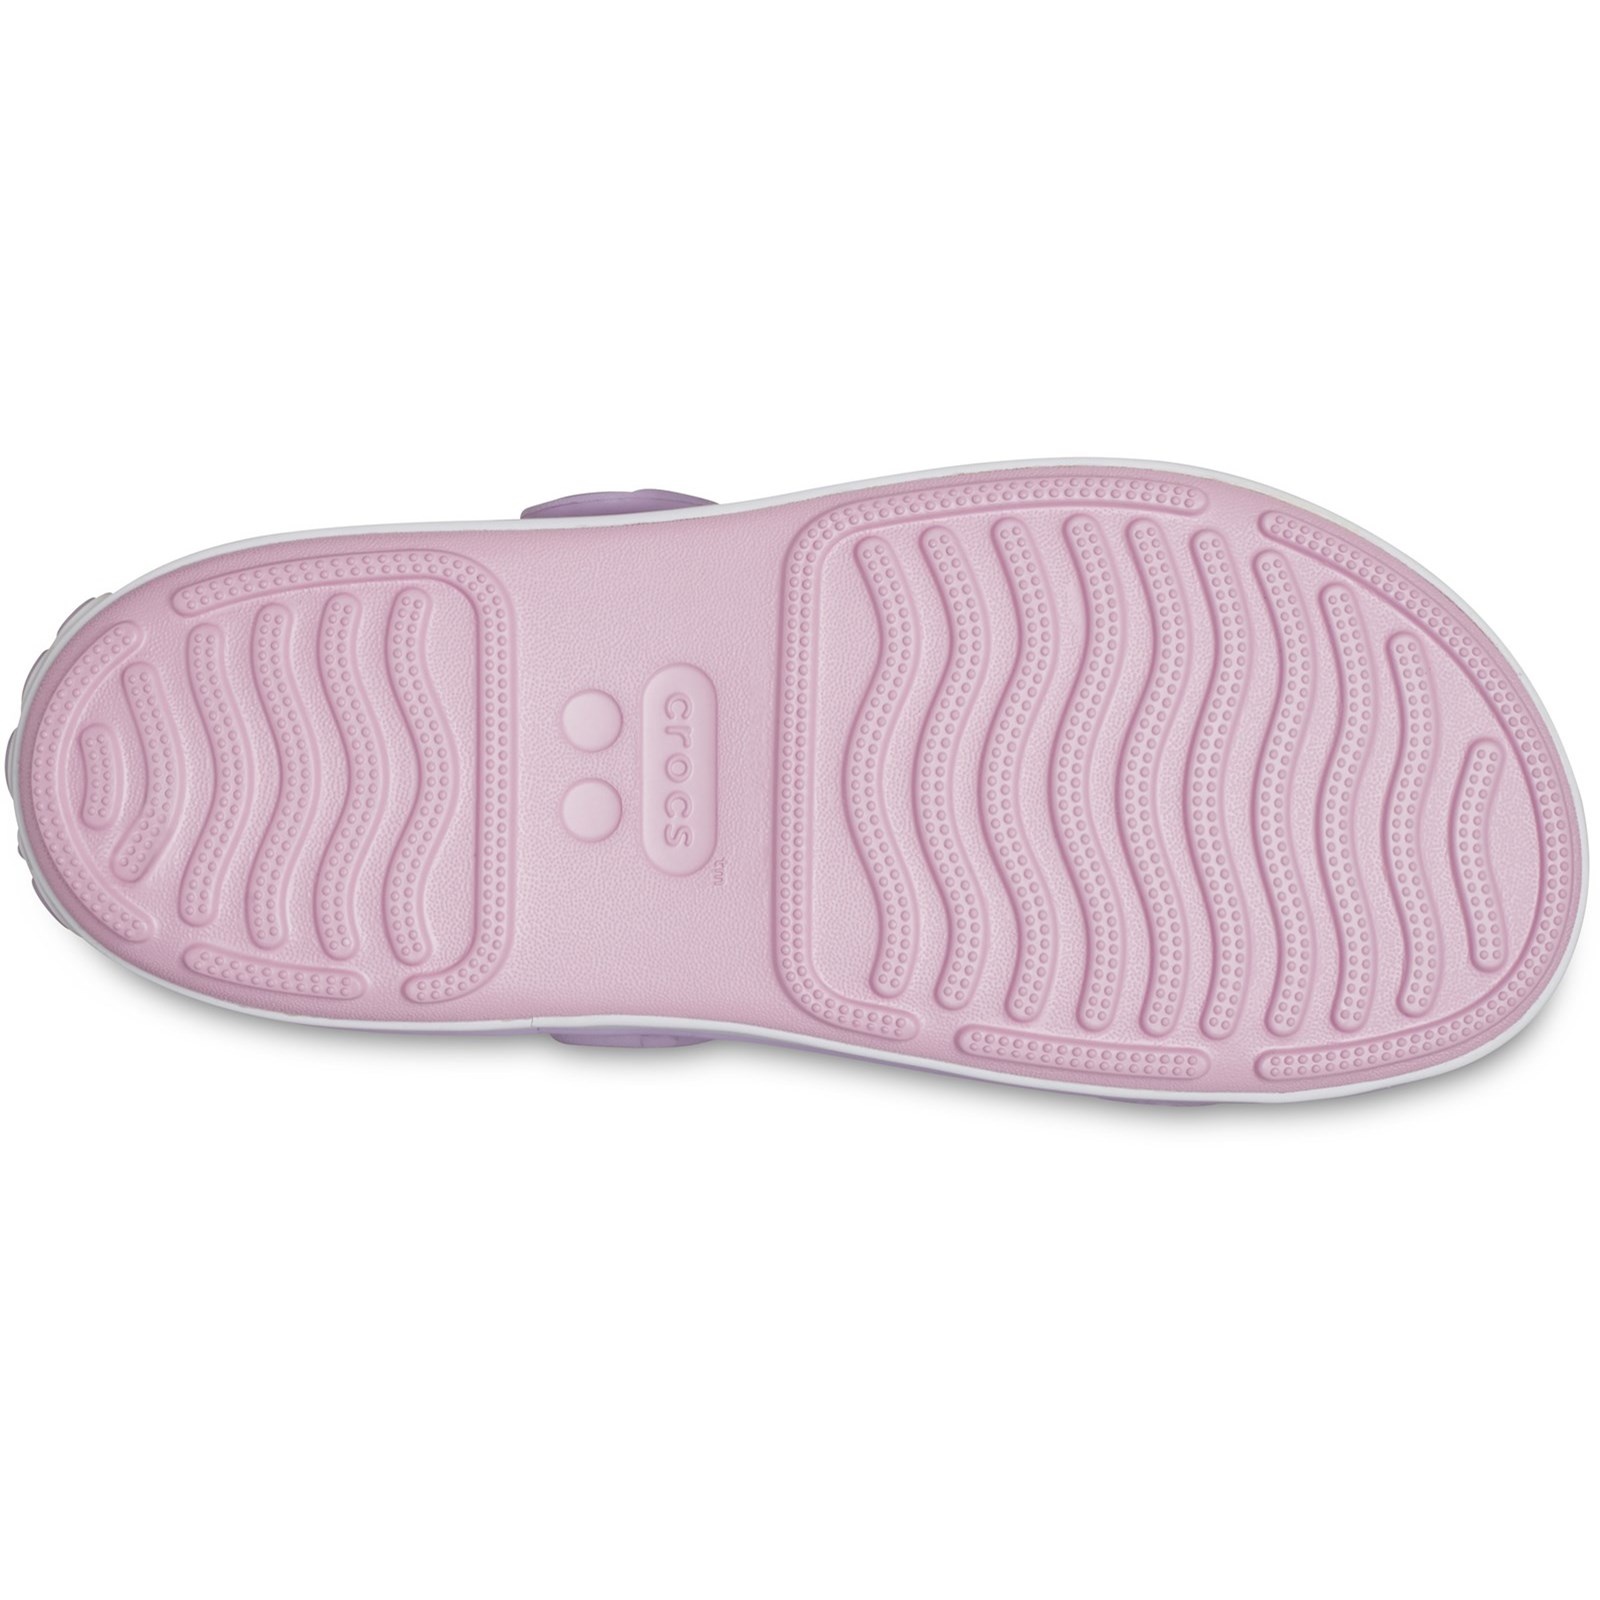 Crocs Cruiser Sandal Pink/Lavender Infant